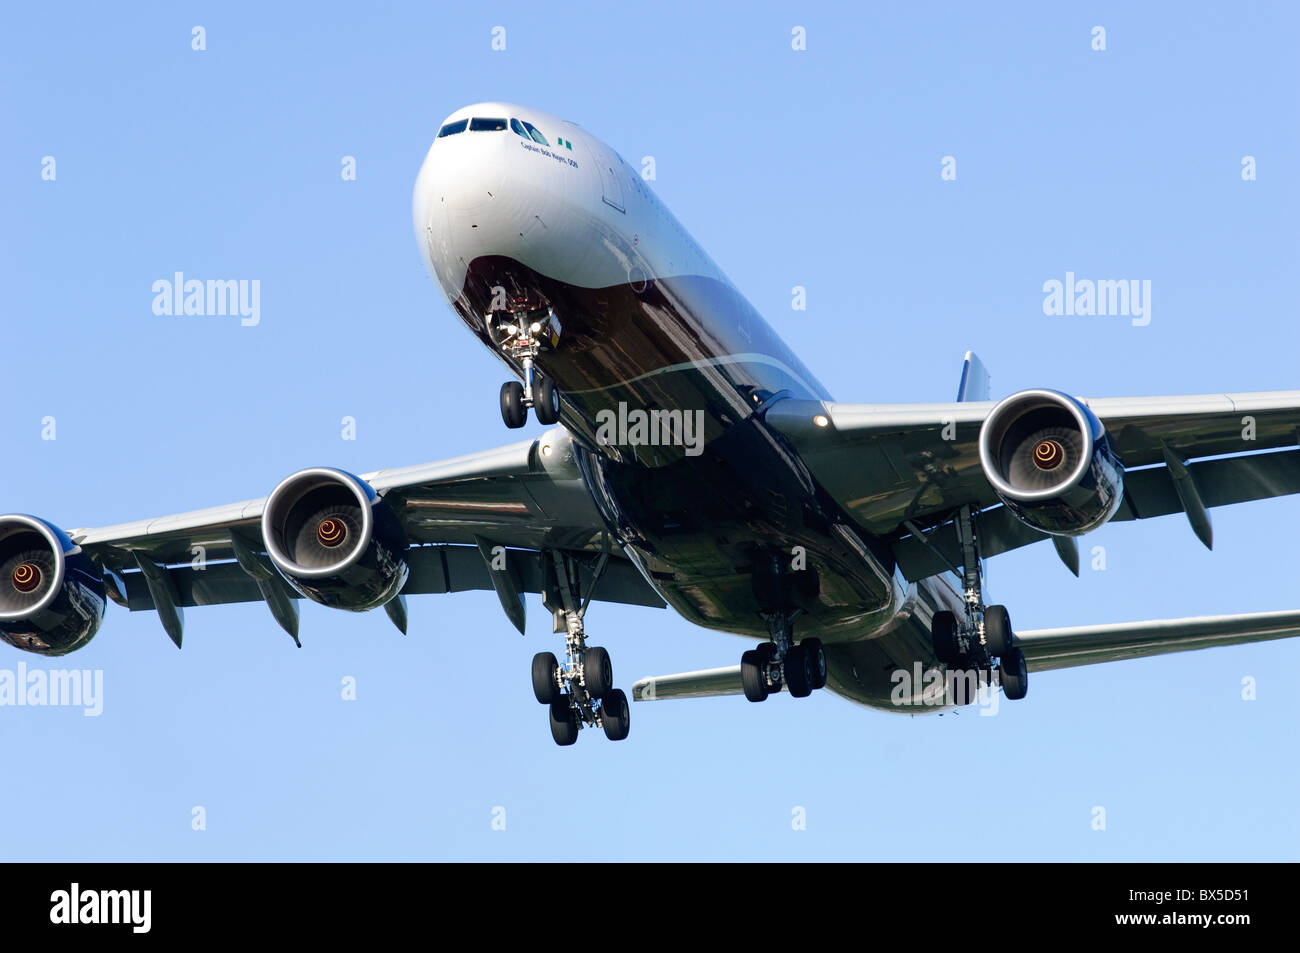 Airbus A340 azionato da Arik aria sull approccio finale per l'atterraggio all'Aeroporto di Londra Heathrow Foto Stock